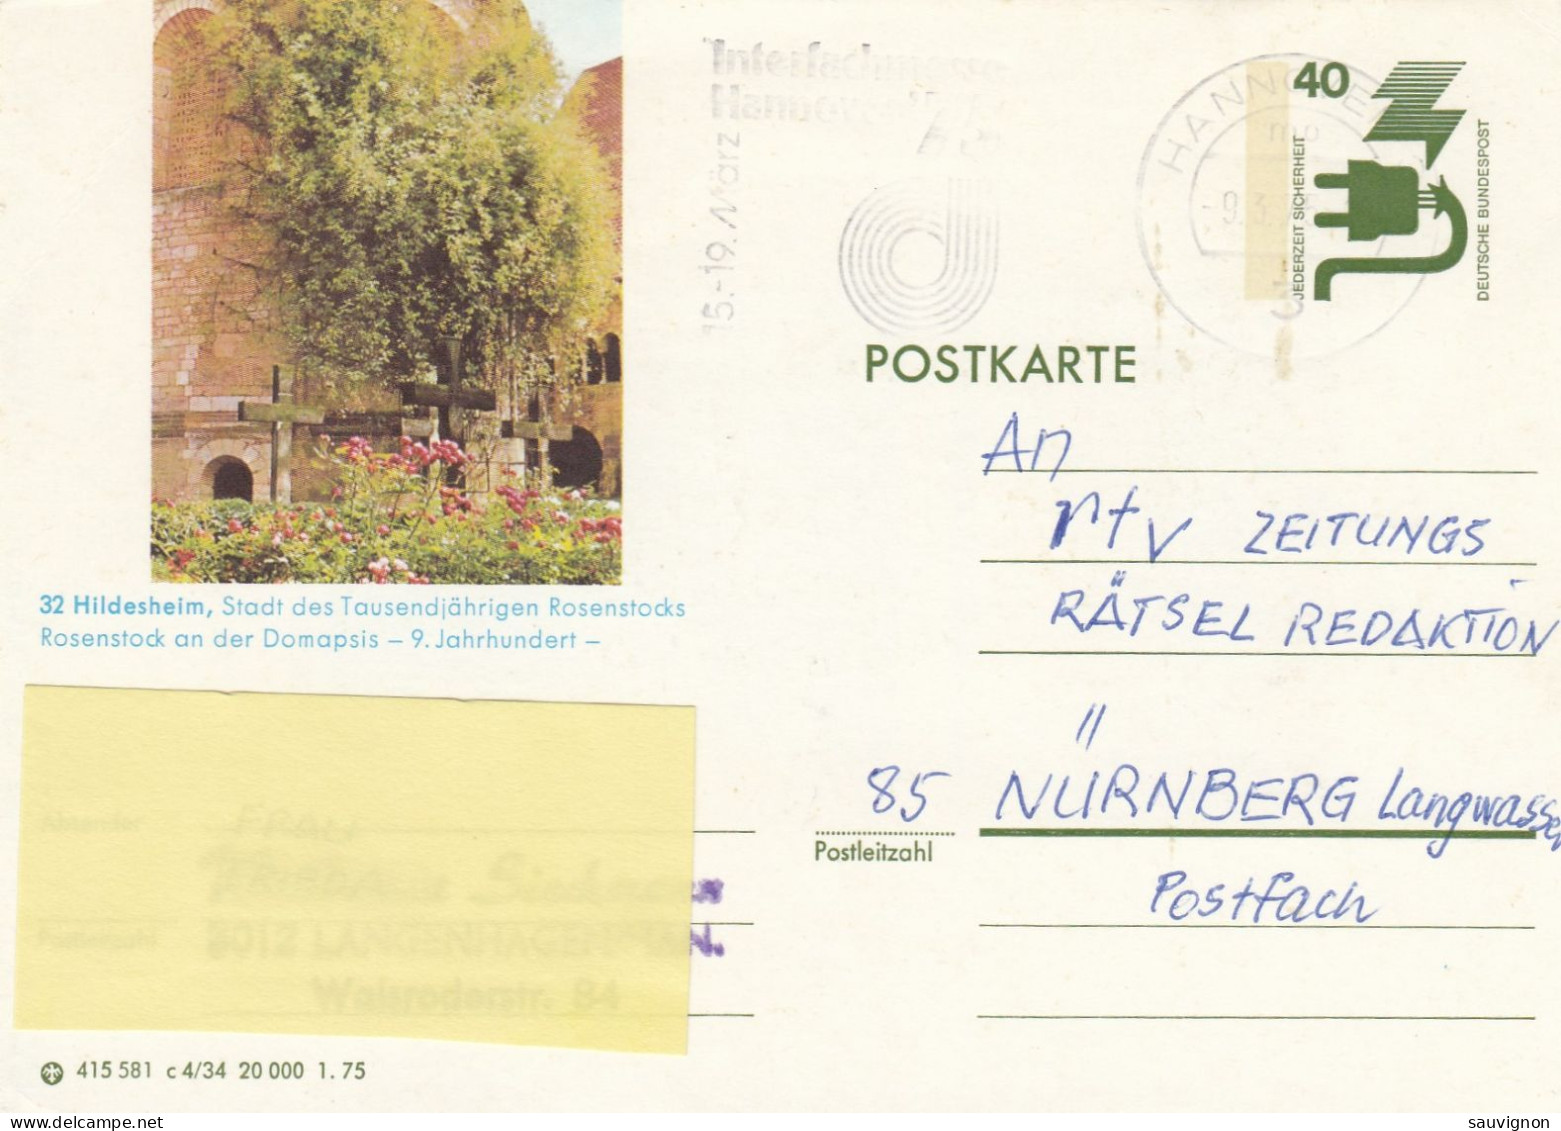 Deutschland. Bildpostkarte 32 HILDESHEIM, 1000-jähriger Rosenstock, Wertstempel 40 Pfg. Unfallverhütung, Serie "c" - Bildpostkarten - Gebraucht